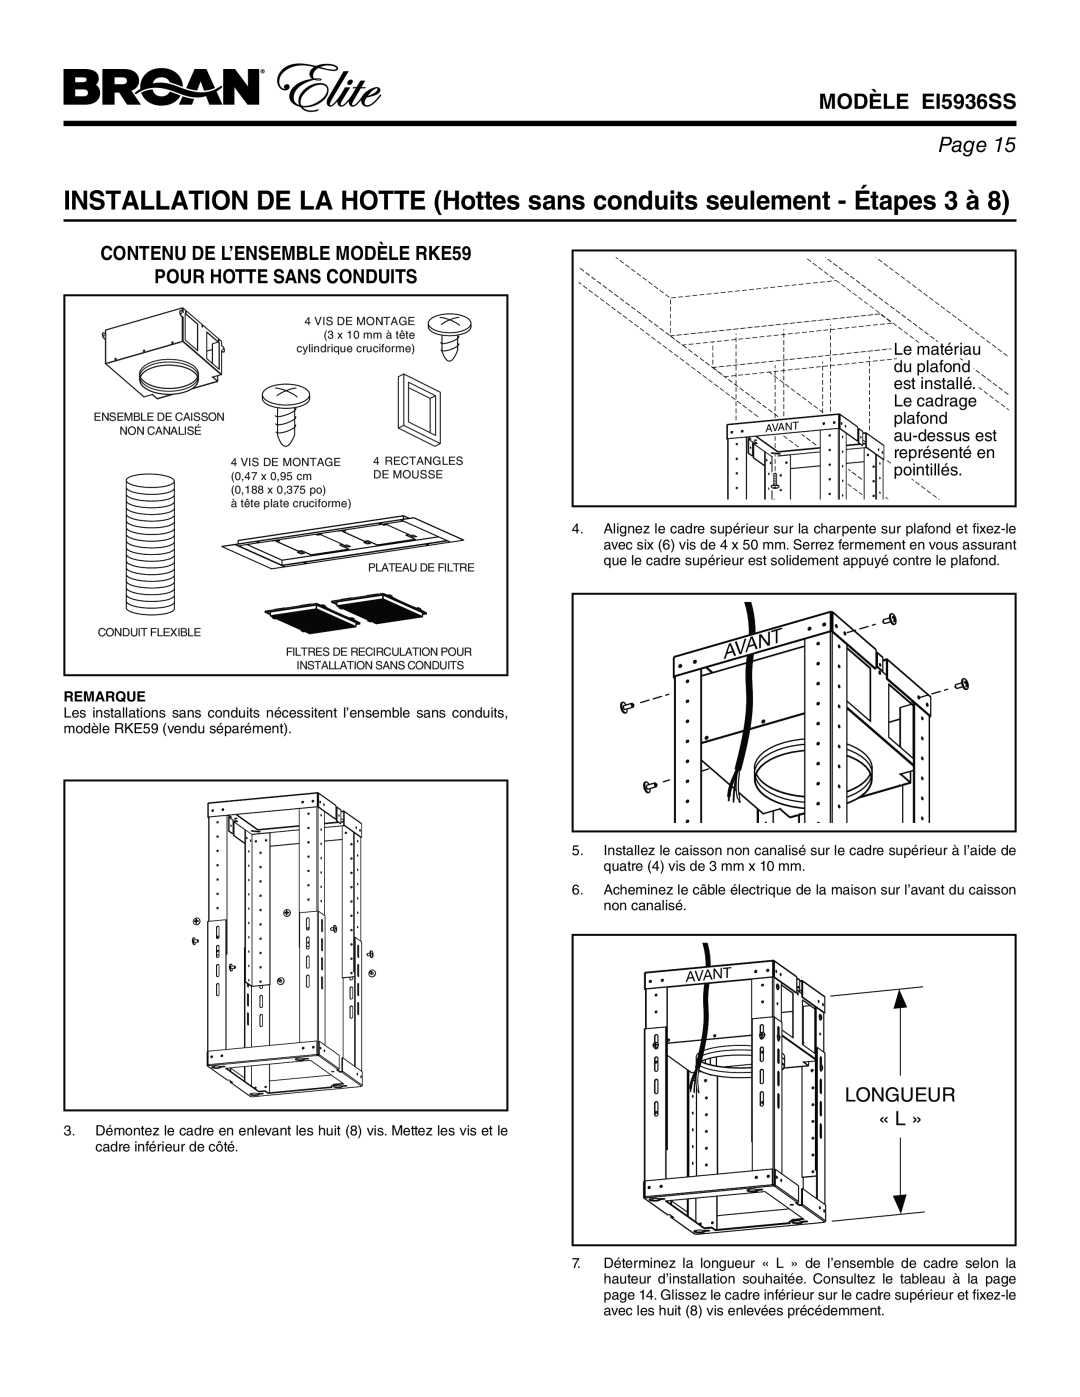 Broan EI5936SS INSTALLATION DE LA HOTTE Hottes sans conduits seulement - Étapes 3 à, Longueur, « L », Avant, Page, plafond 